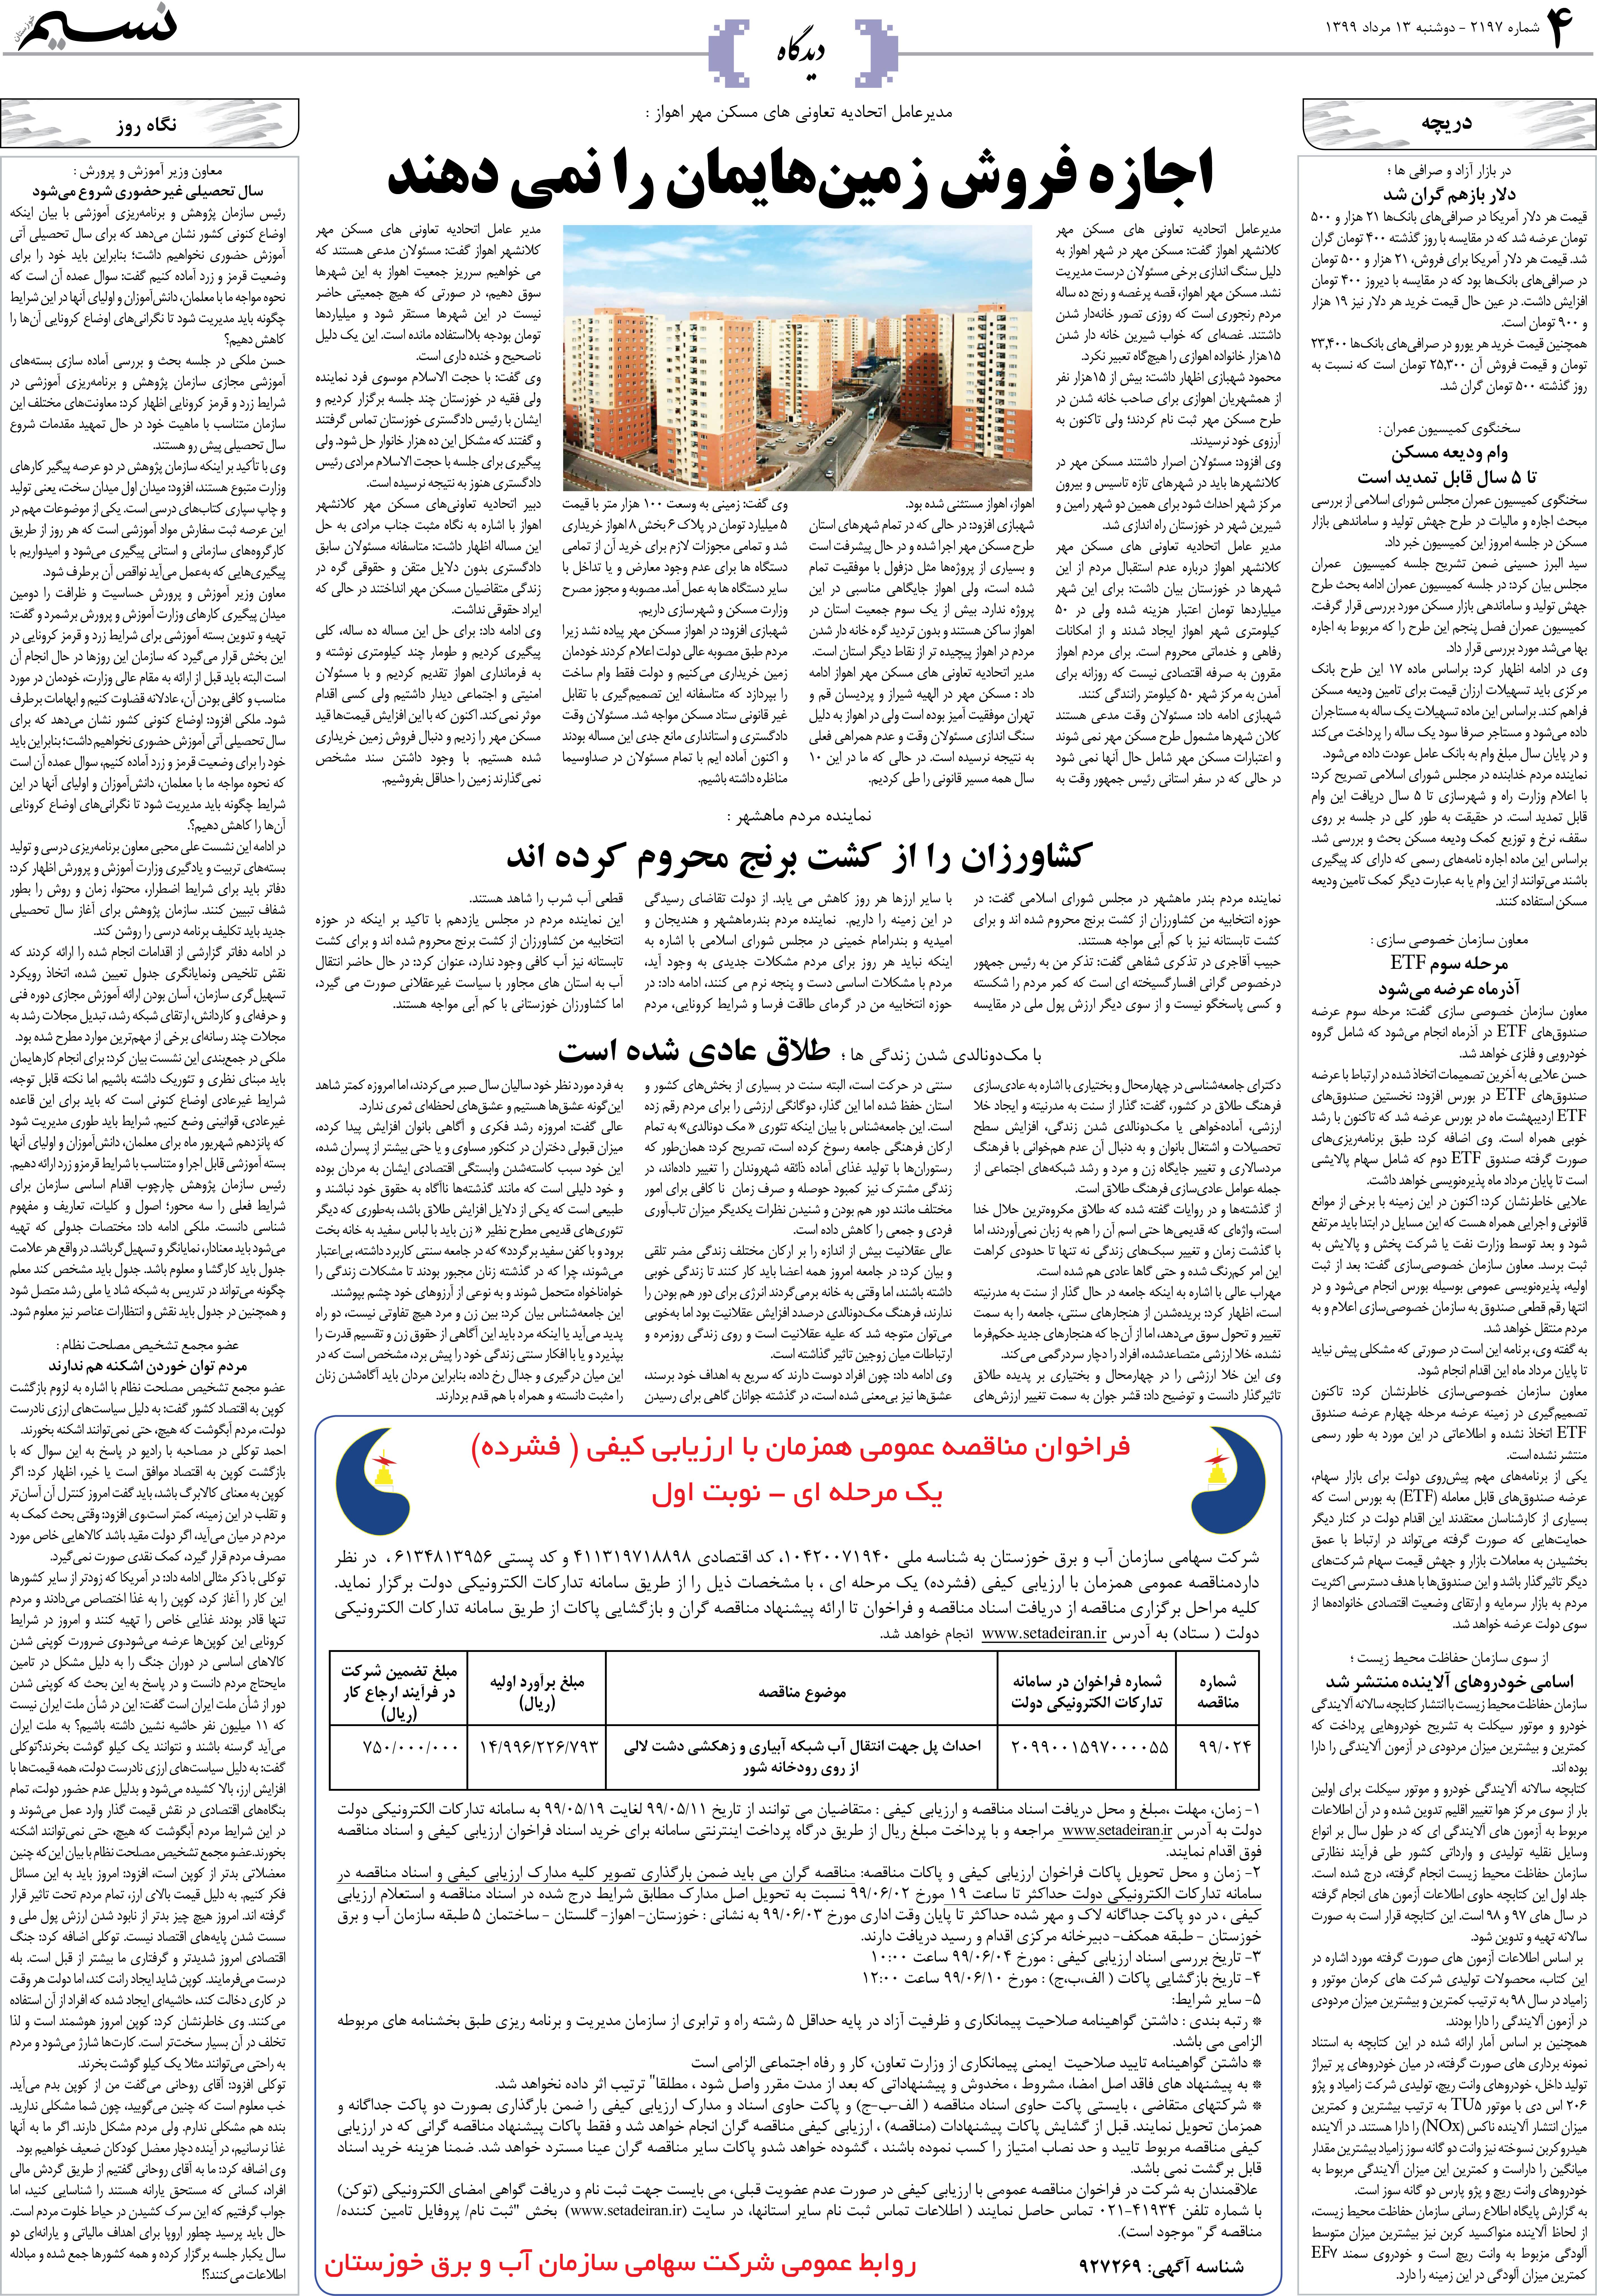 صفحه دیدگاه روزنامه نسیم شماره 2197